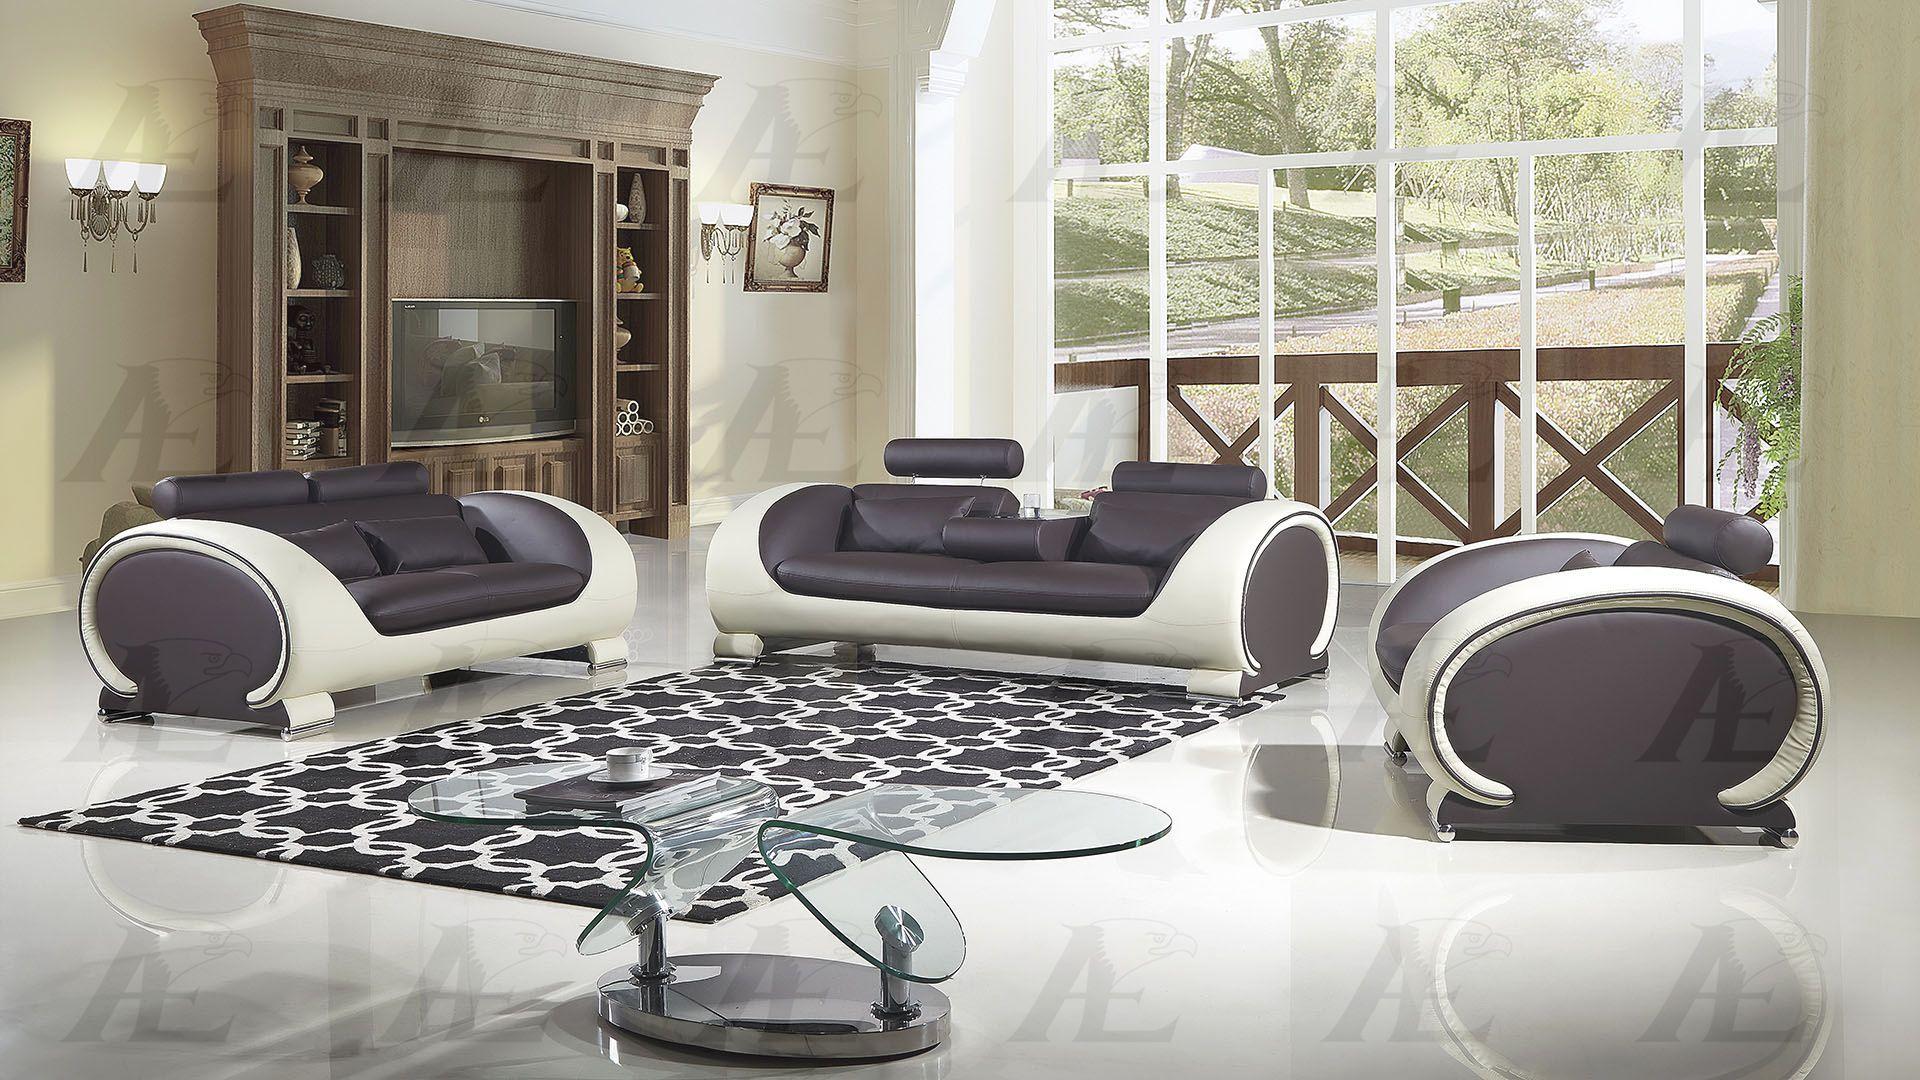 

    
American Eagle Furniture AE-D802-DC.CRM Sofa Cream/Chocolate AE-D802-DC.CRM-SF
